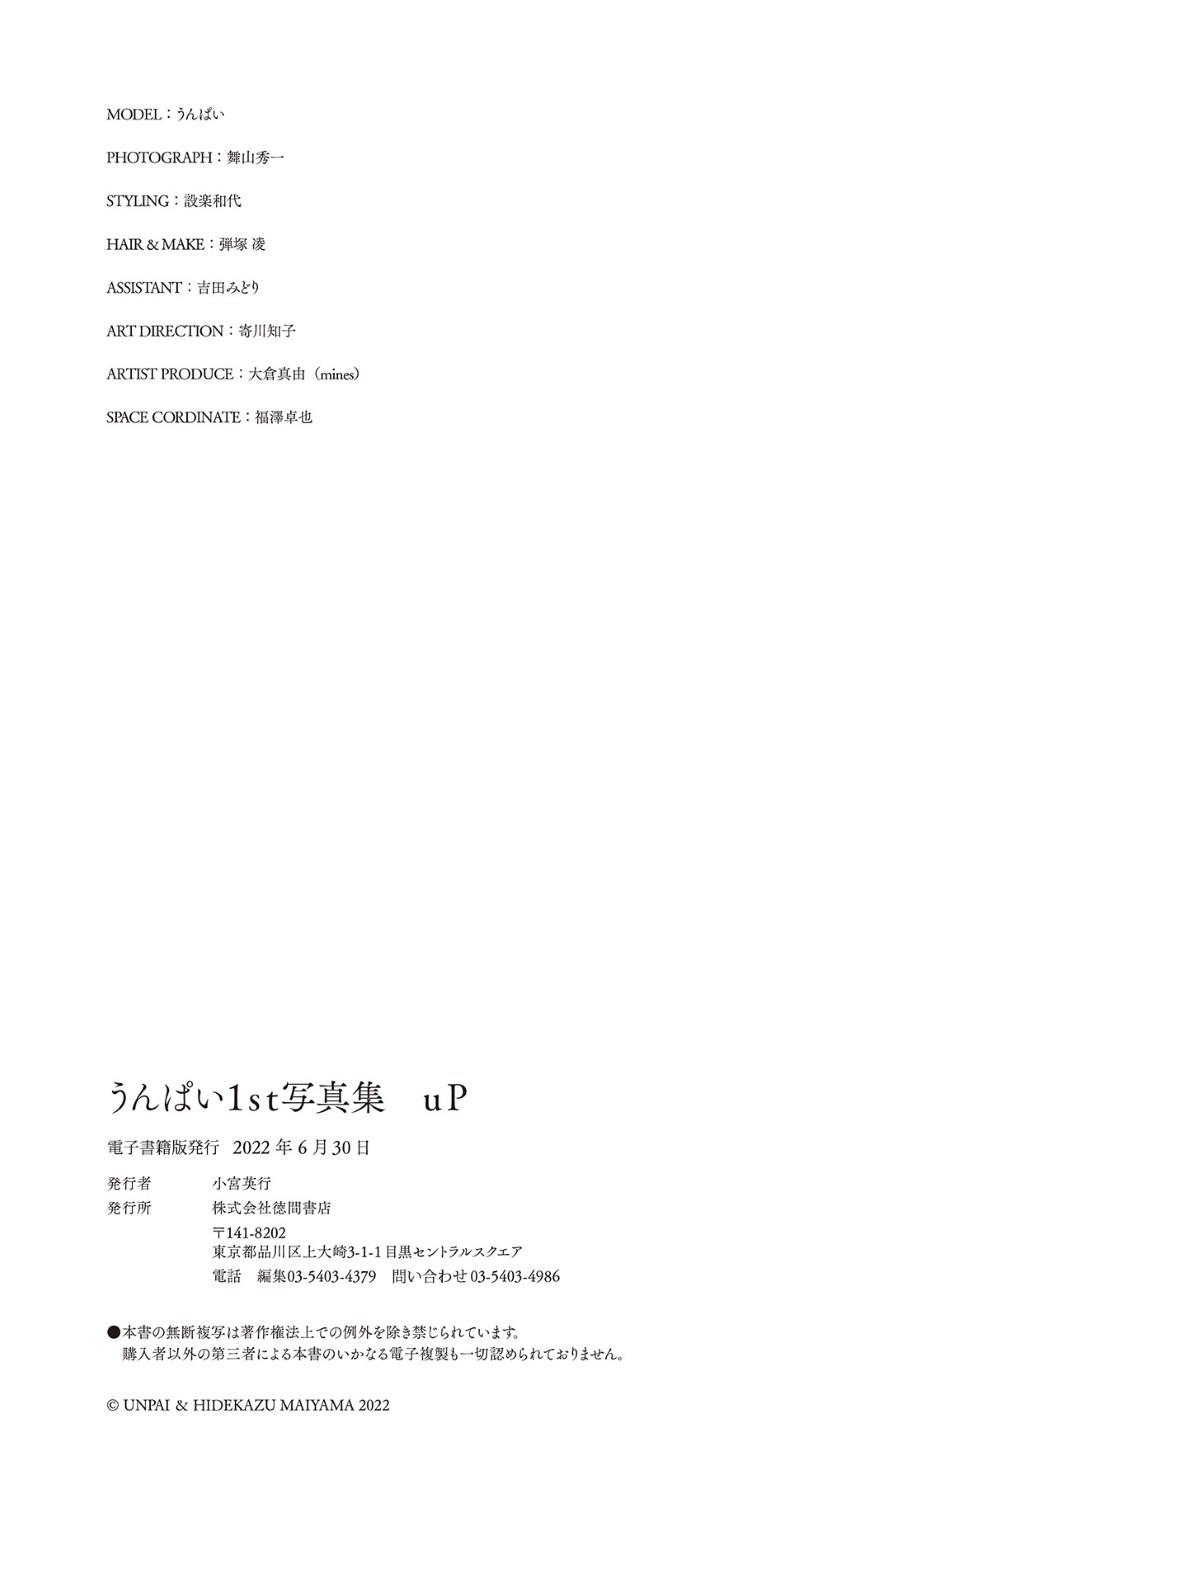 Photobook Unpai うんぱい 1st Photobook Up No Watermark 0057 5173493010.jpg